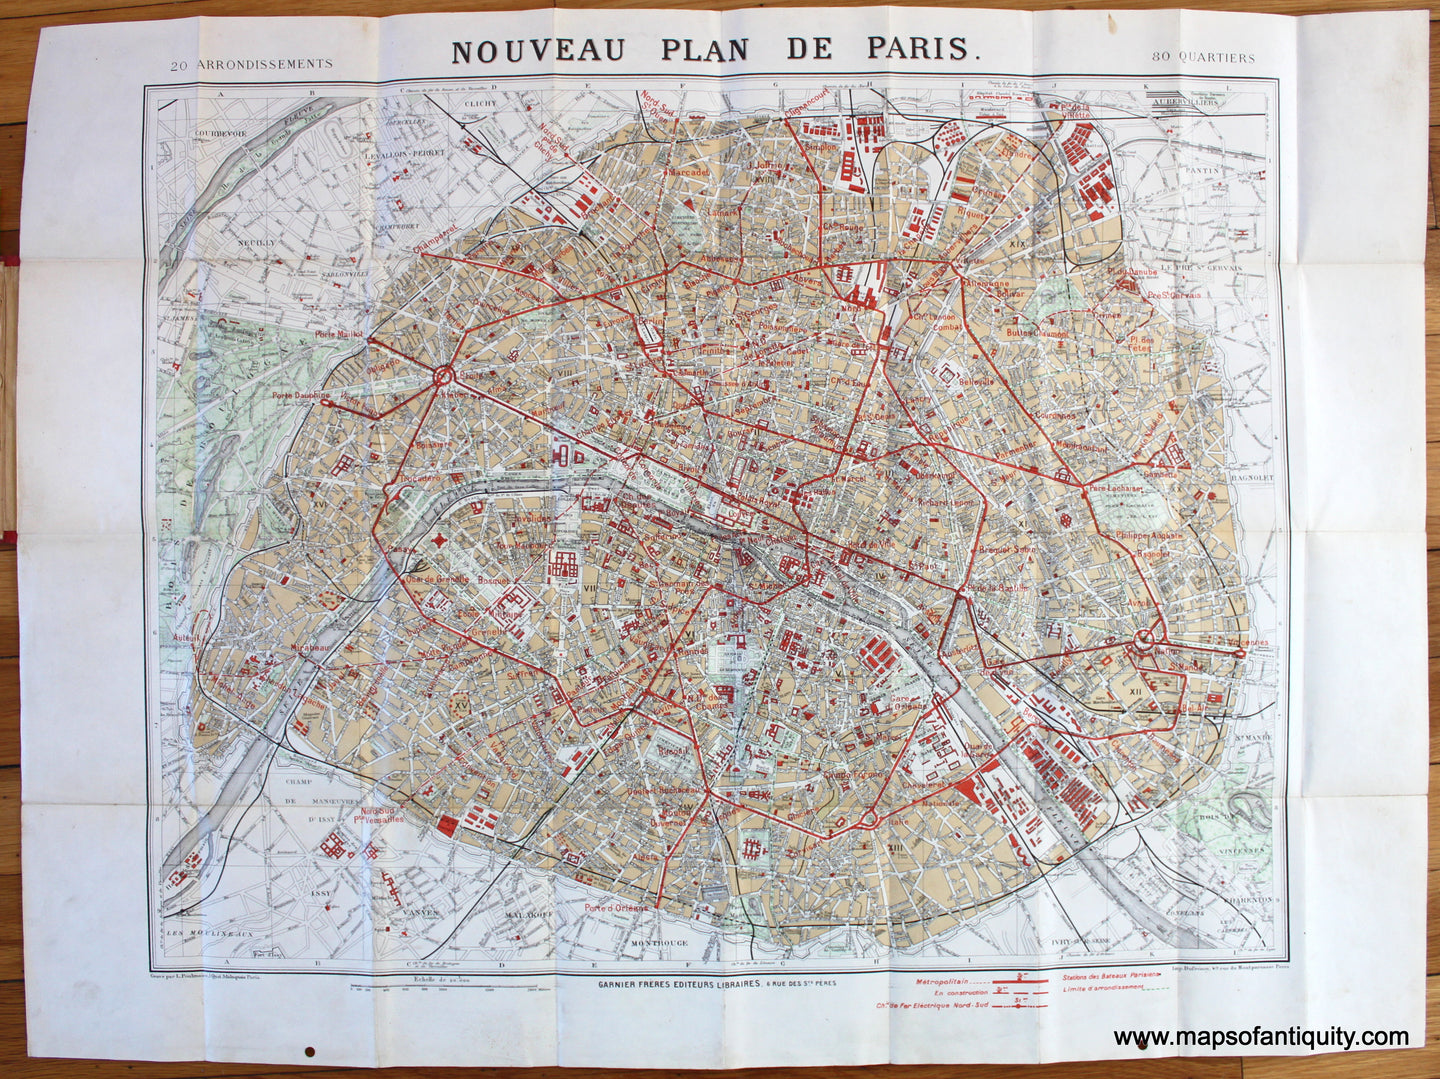 Antique-Map-Environs-Paris-Nouveau-Plan-Garnier-1920s-1900s-metro-travel-tourist-Maps-of-Antiquity